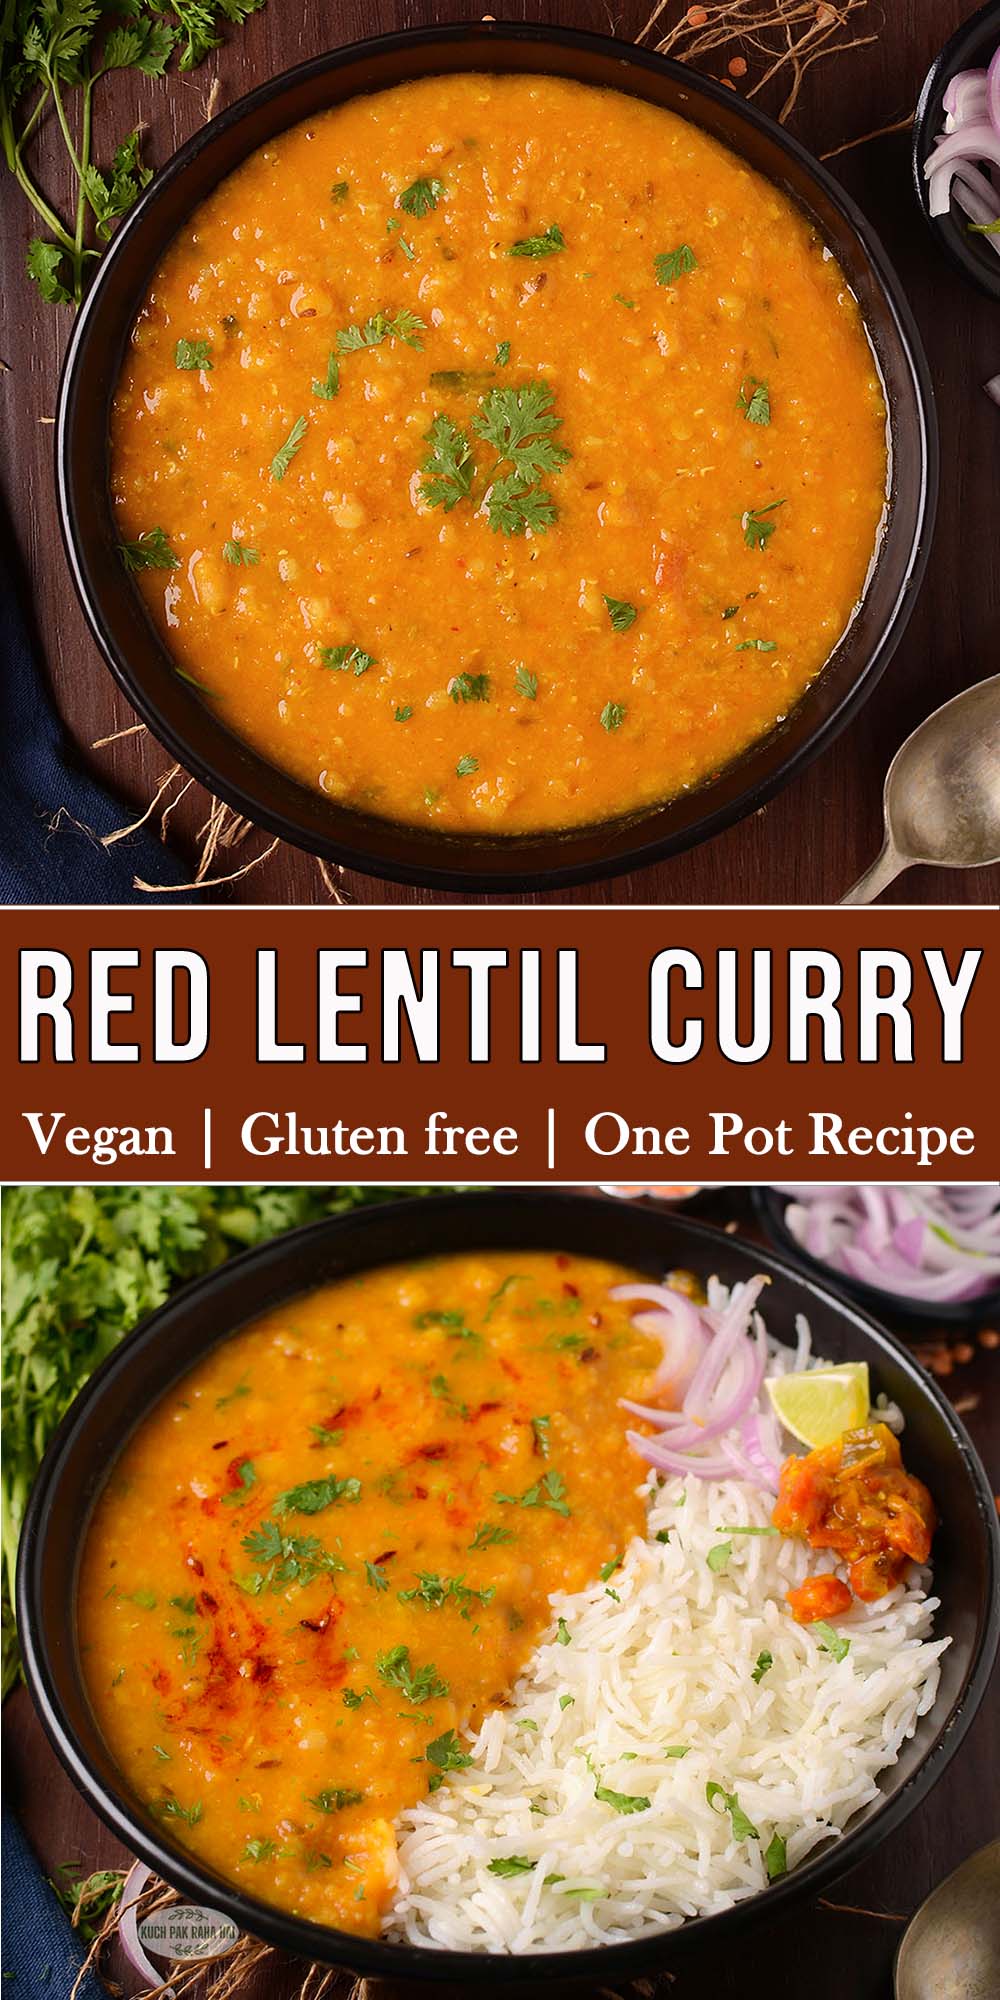 Red lentil curry vegan easy recipe.